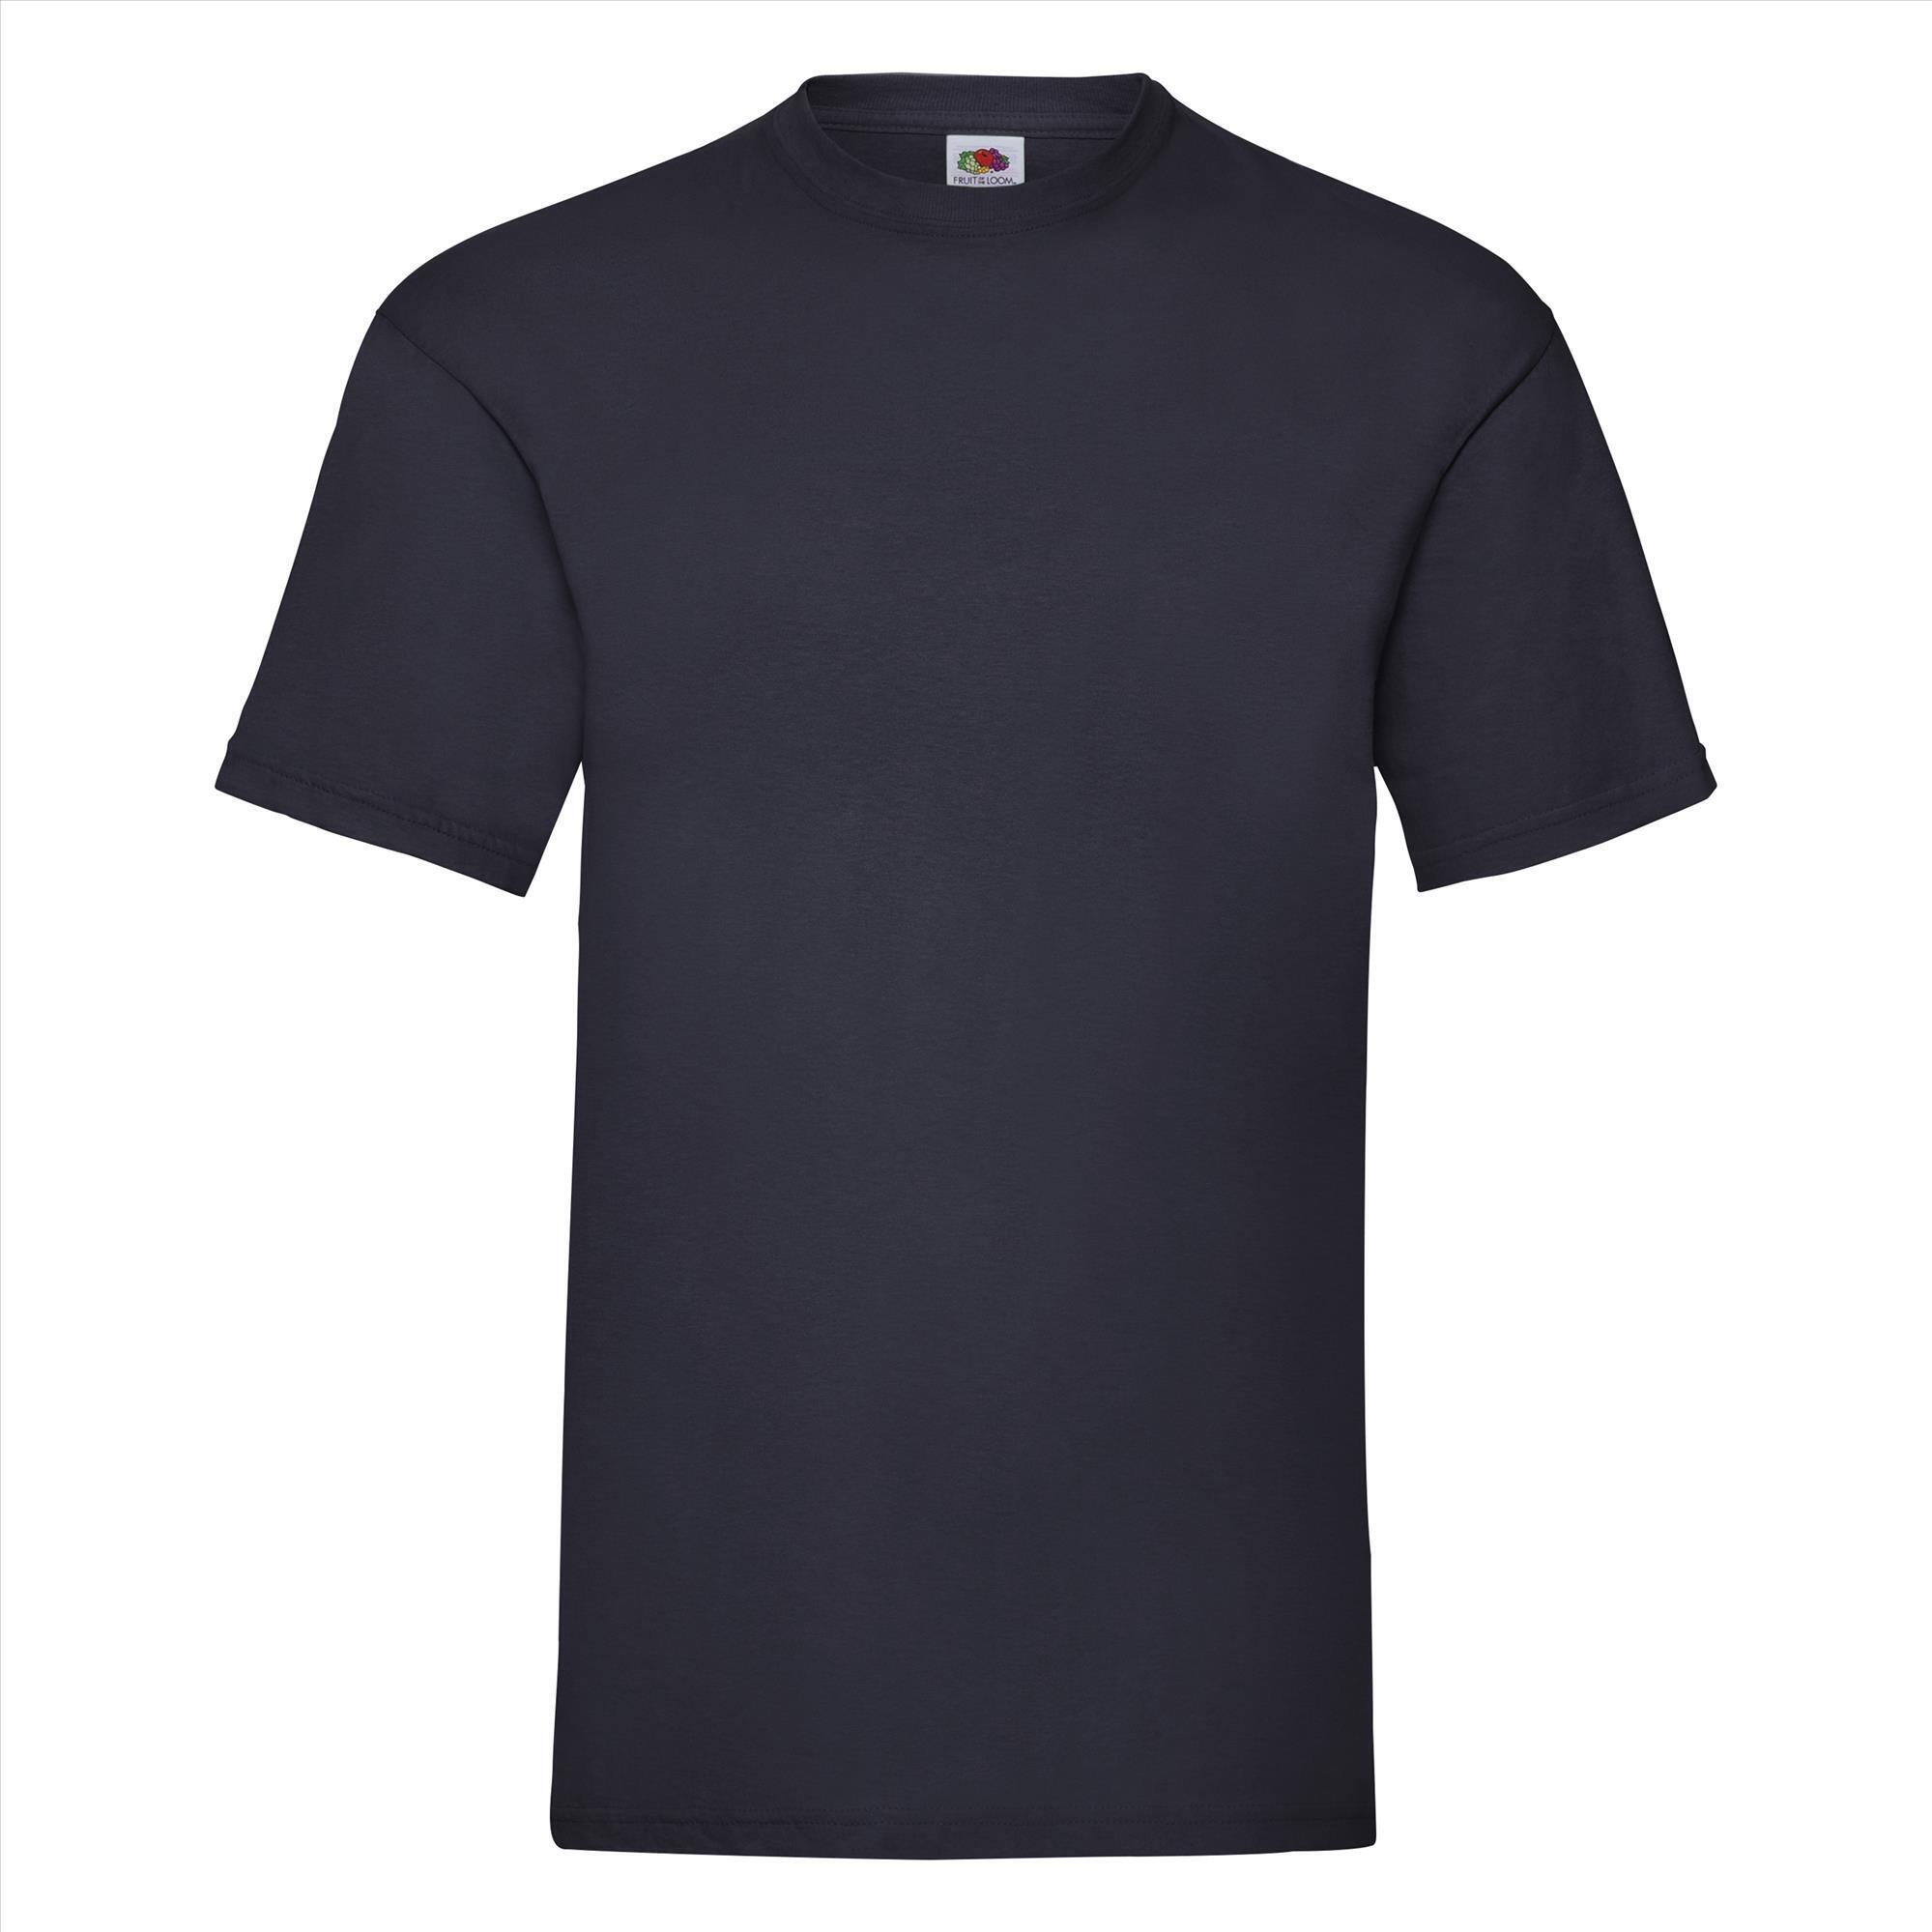 T-shirt voor mannen diep Marine blauw personaliseren T-shirt bedrukken